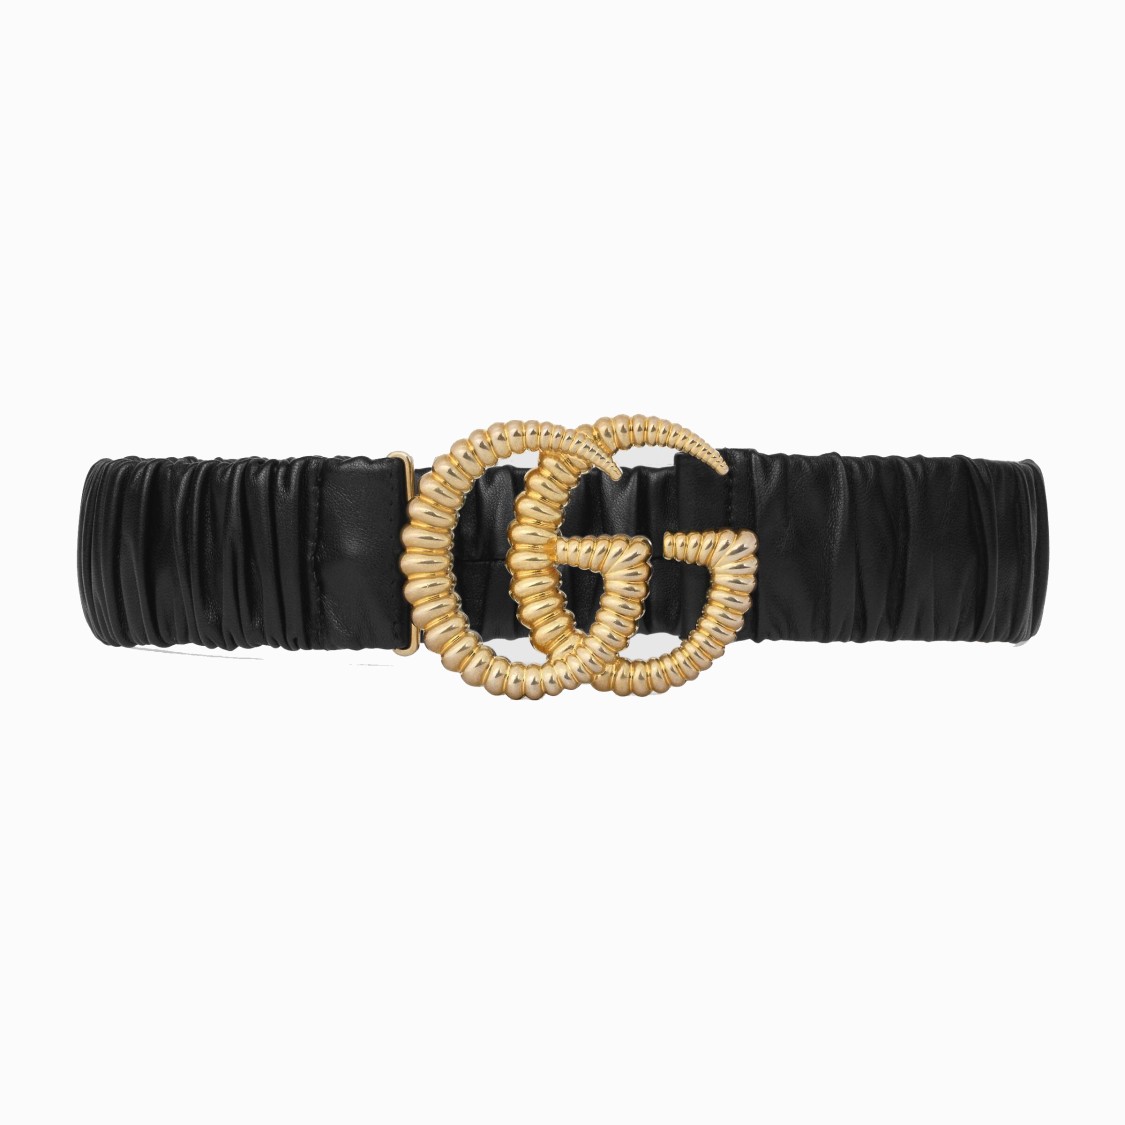 shop GUCCI Saldi Cintura: Gucci cintura in pelle nera con finiture doppia G color oro.
Cintura elasticizzata. 
Altezza 4 cmm. 
Made in Italy.. 602074 B340G-1000 number 8154107